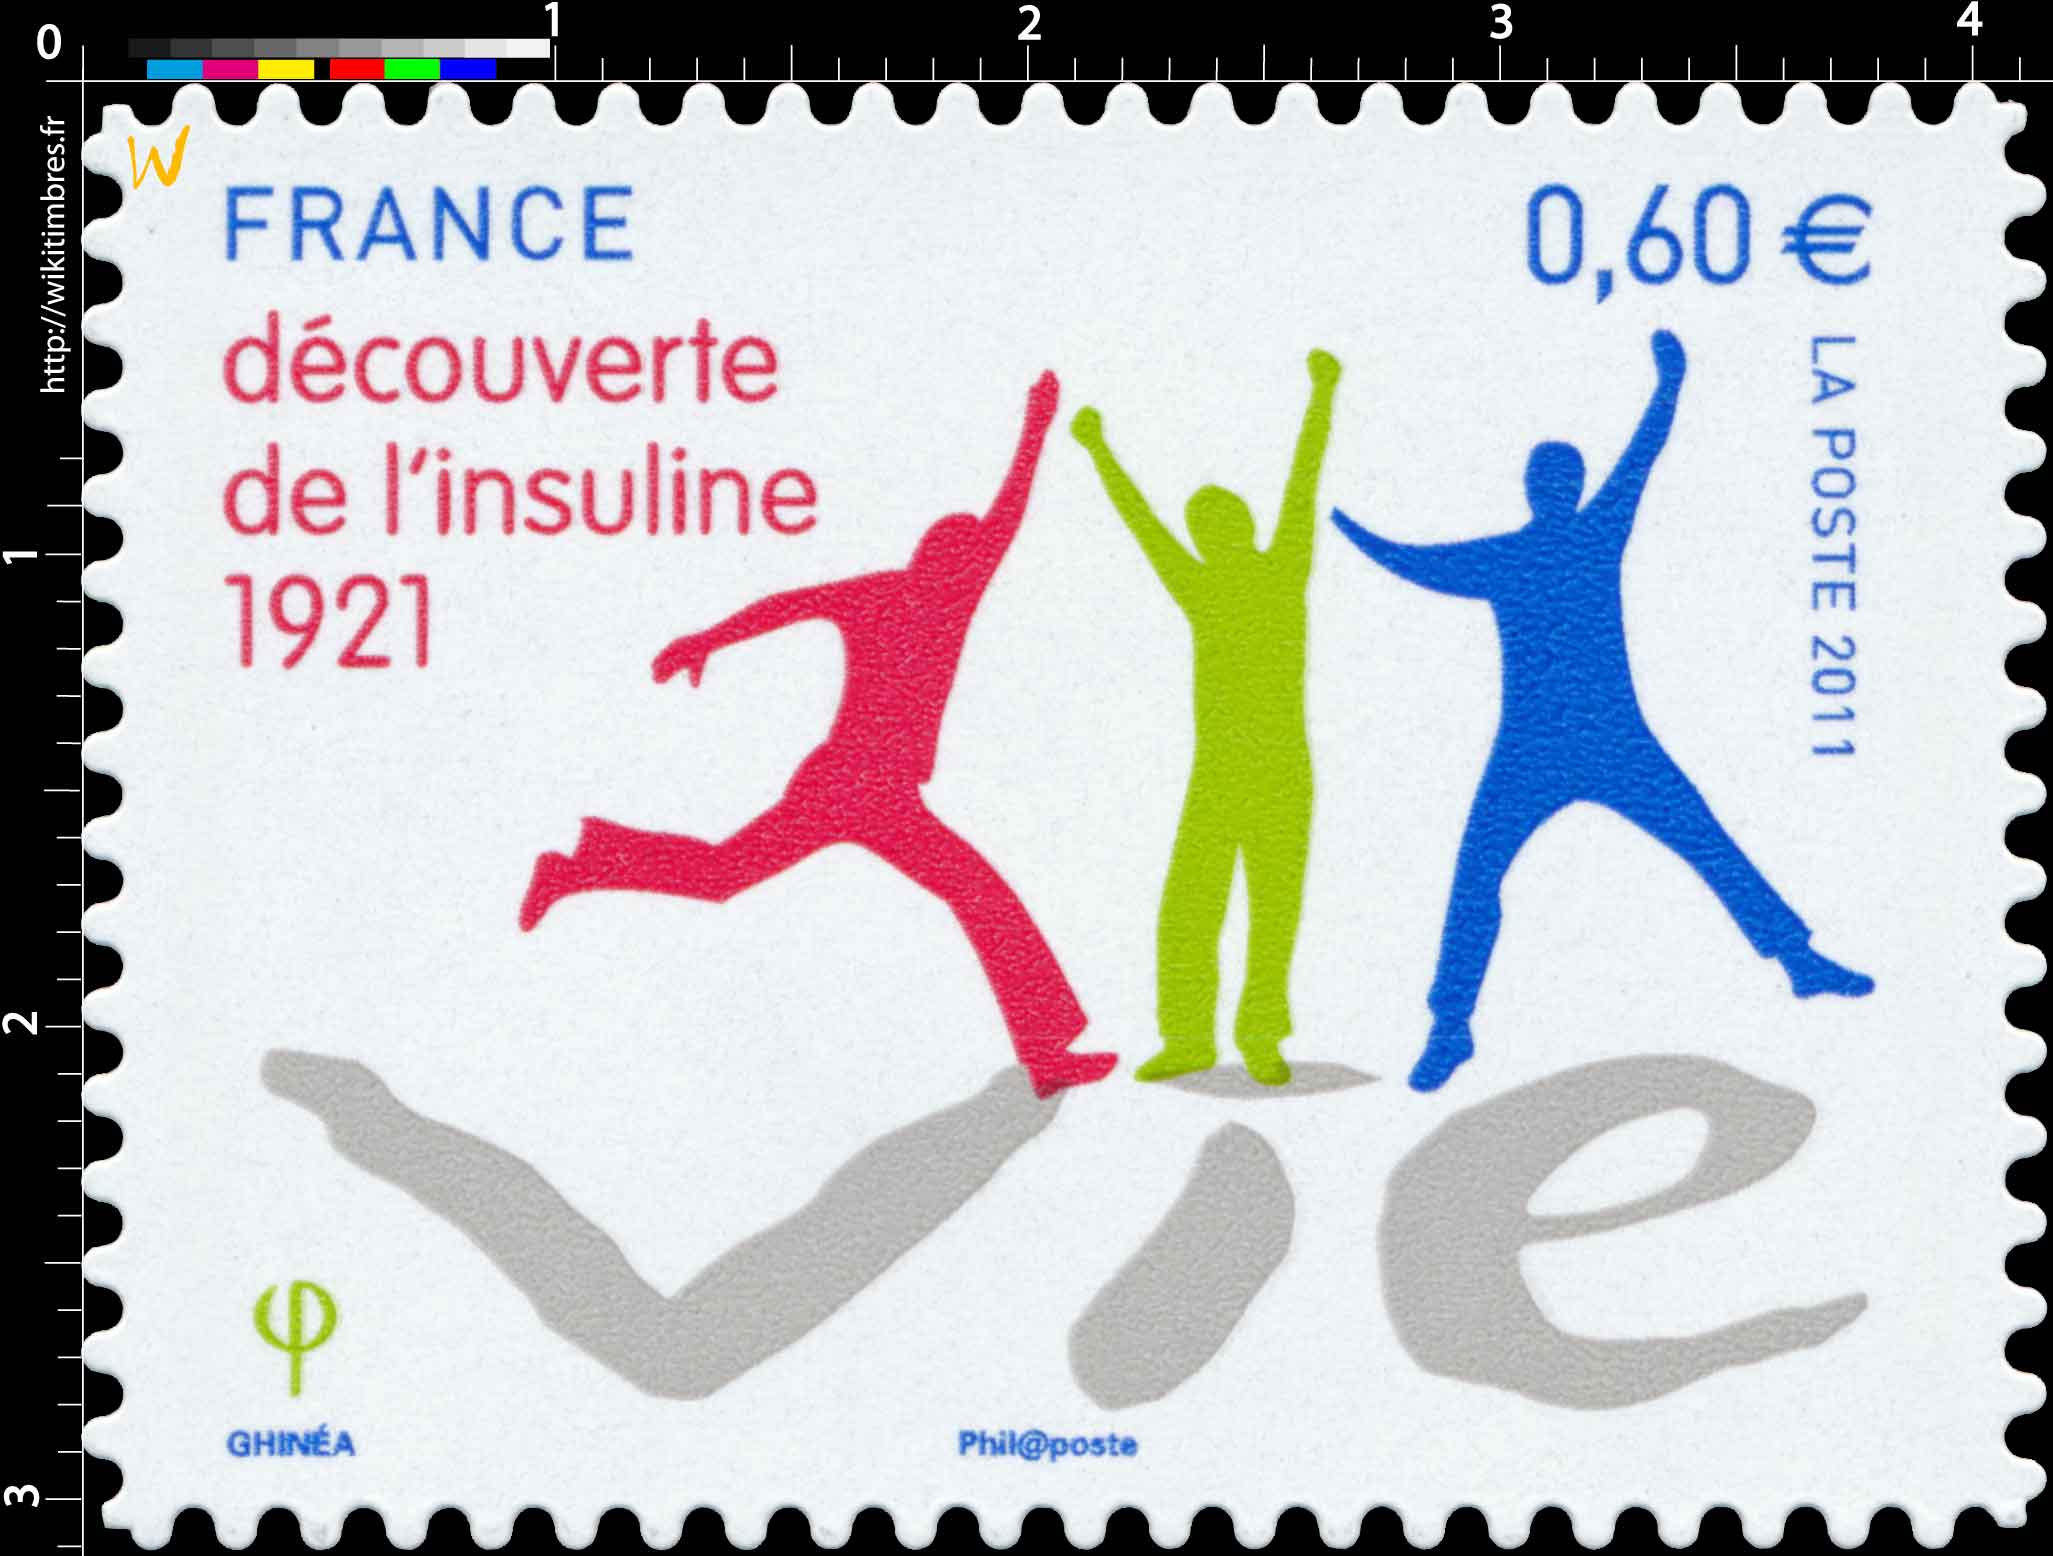 2011 VIE découverte de l'insuline 1921